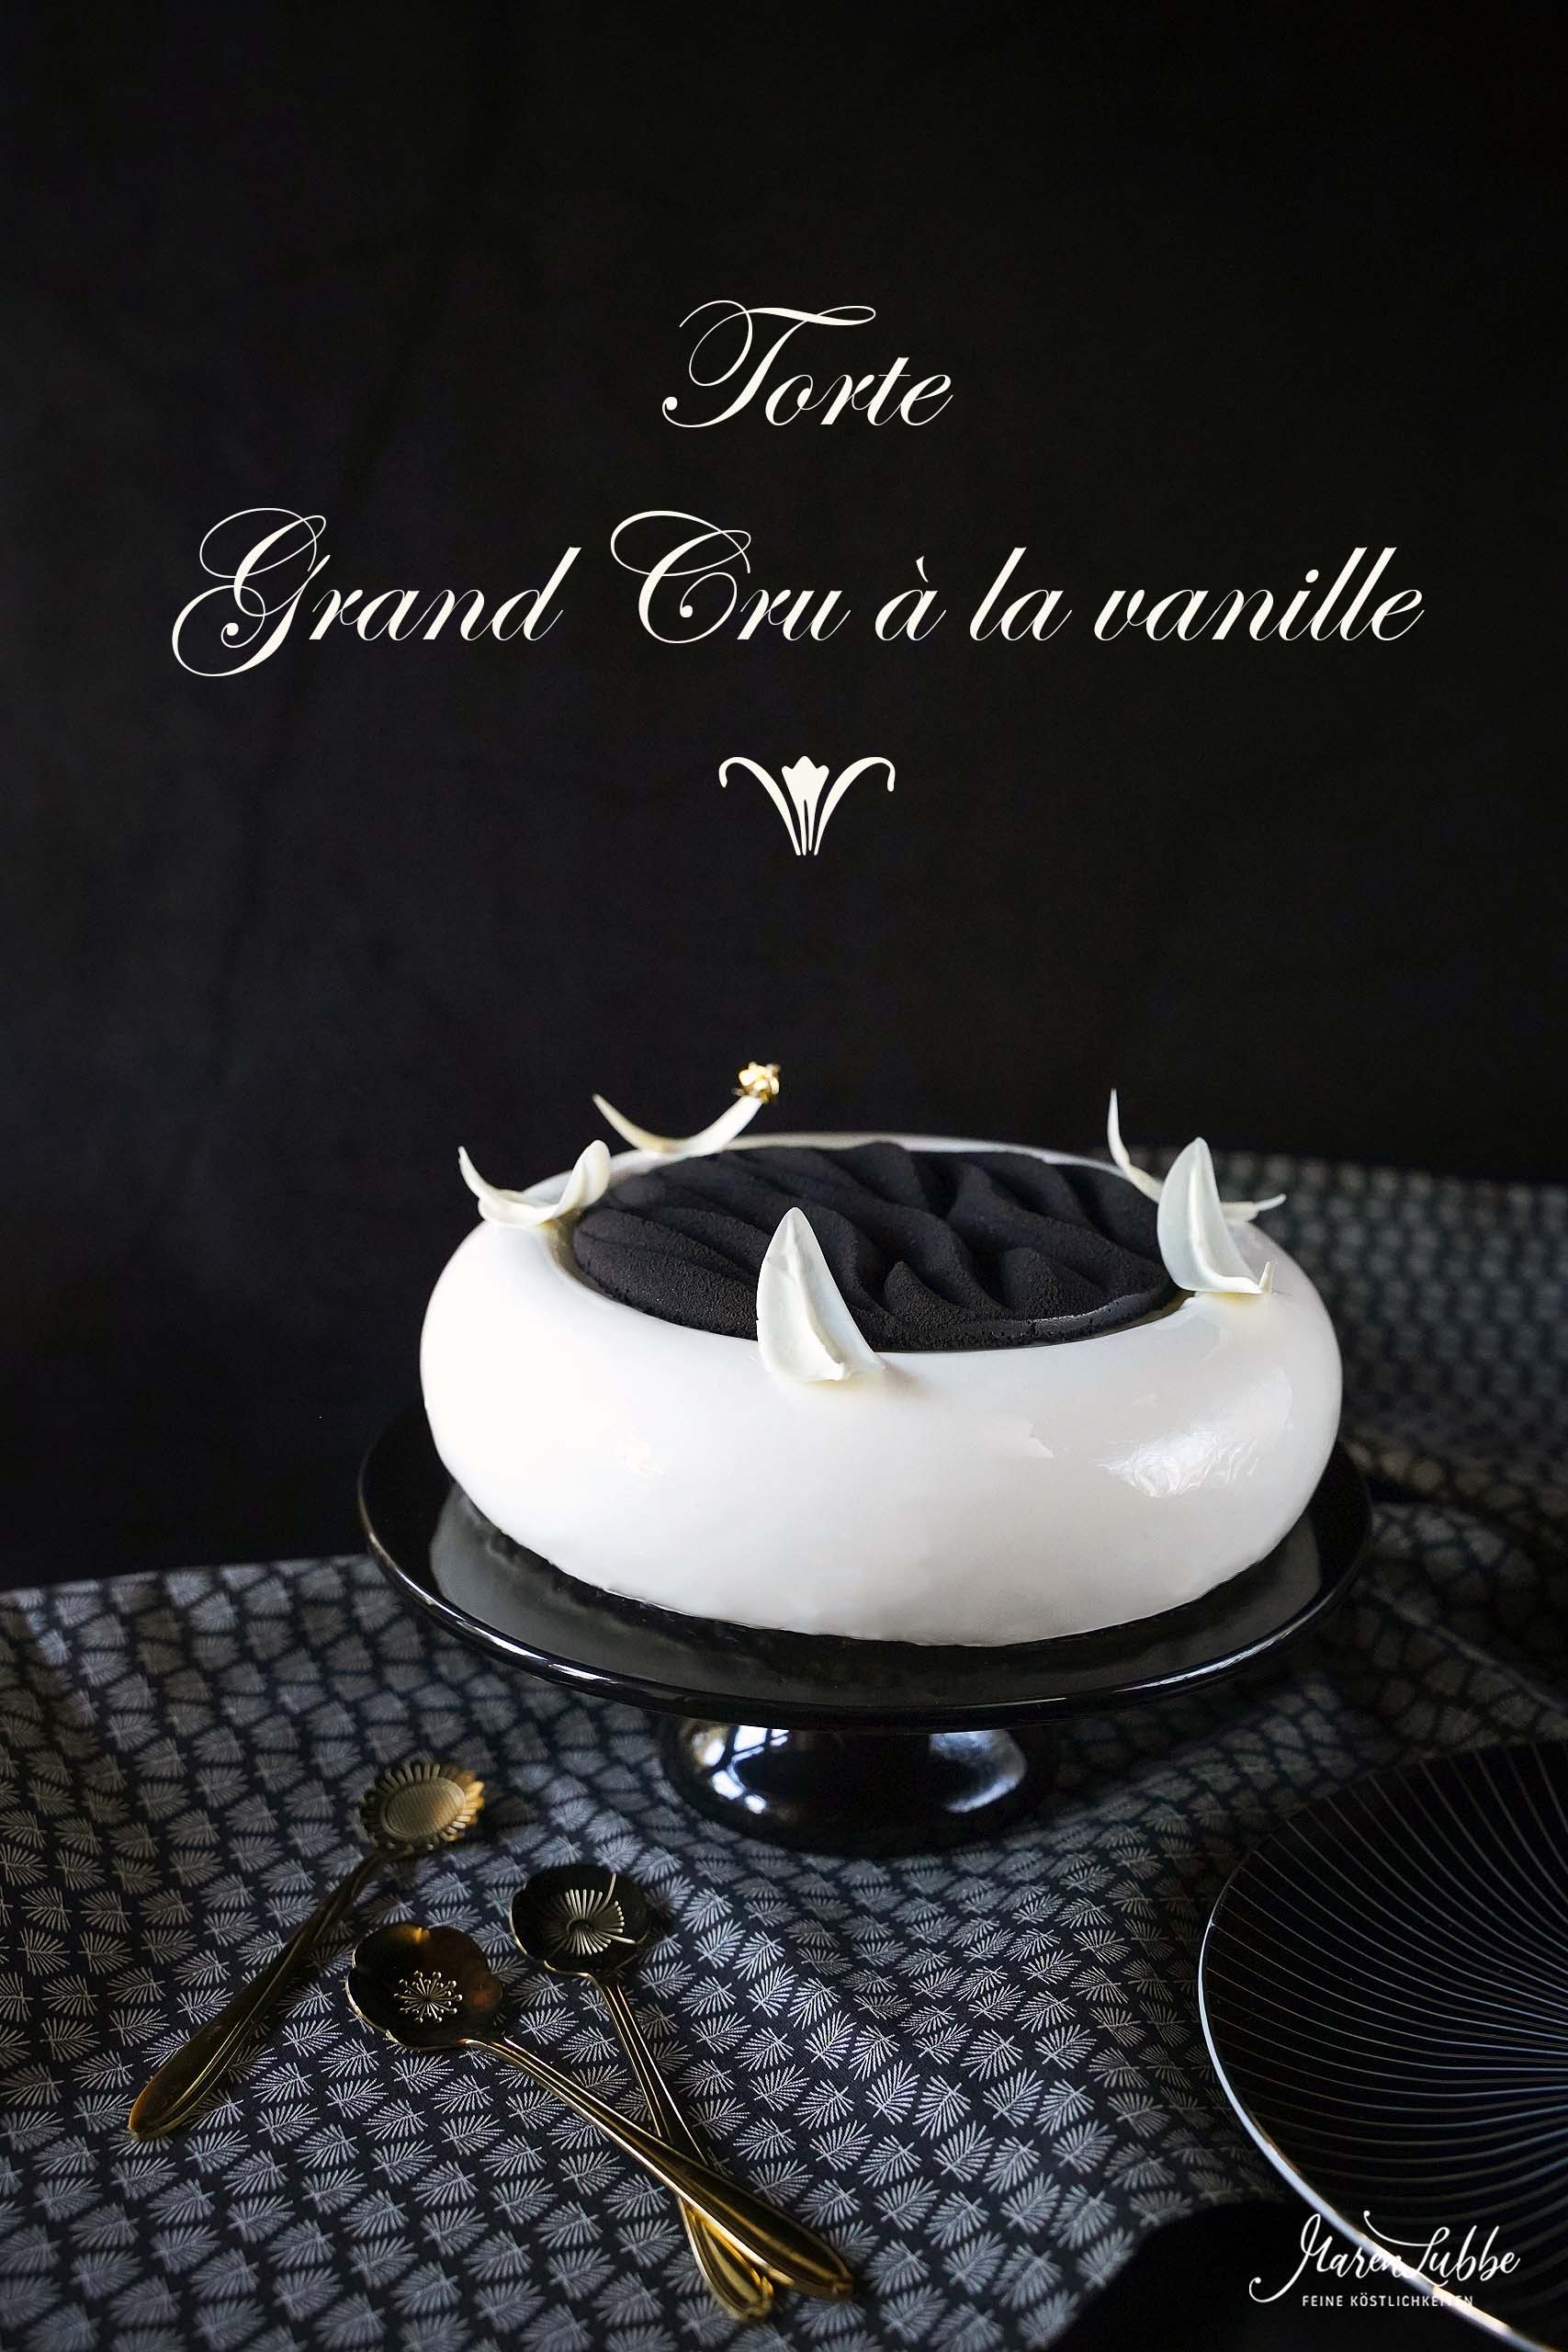 Vanilletorte "Grand Cru à la Vanille"